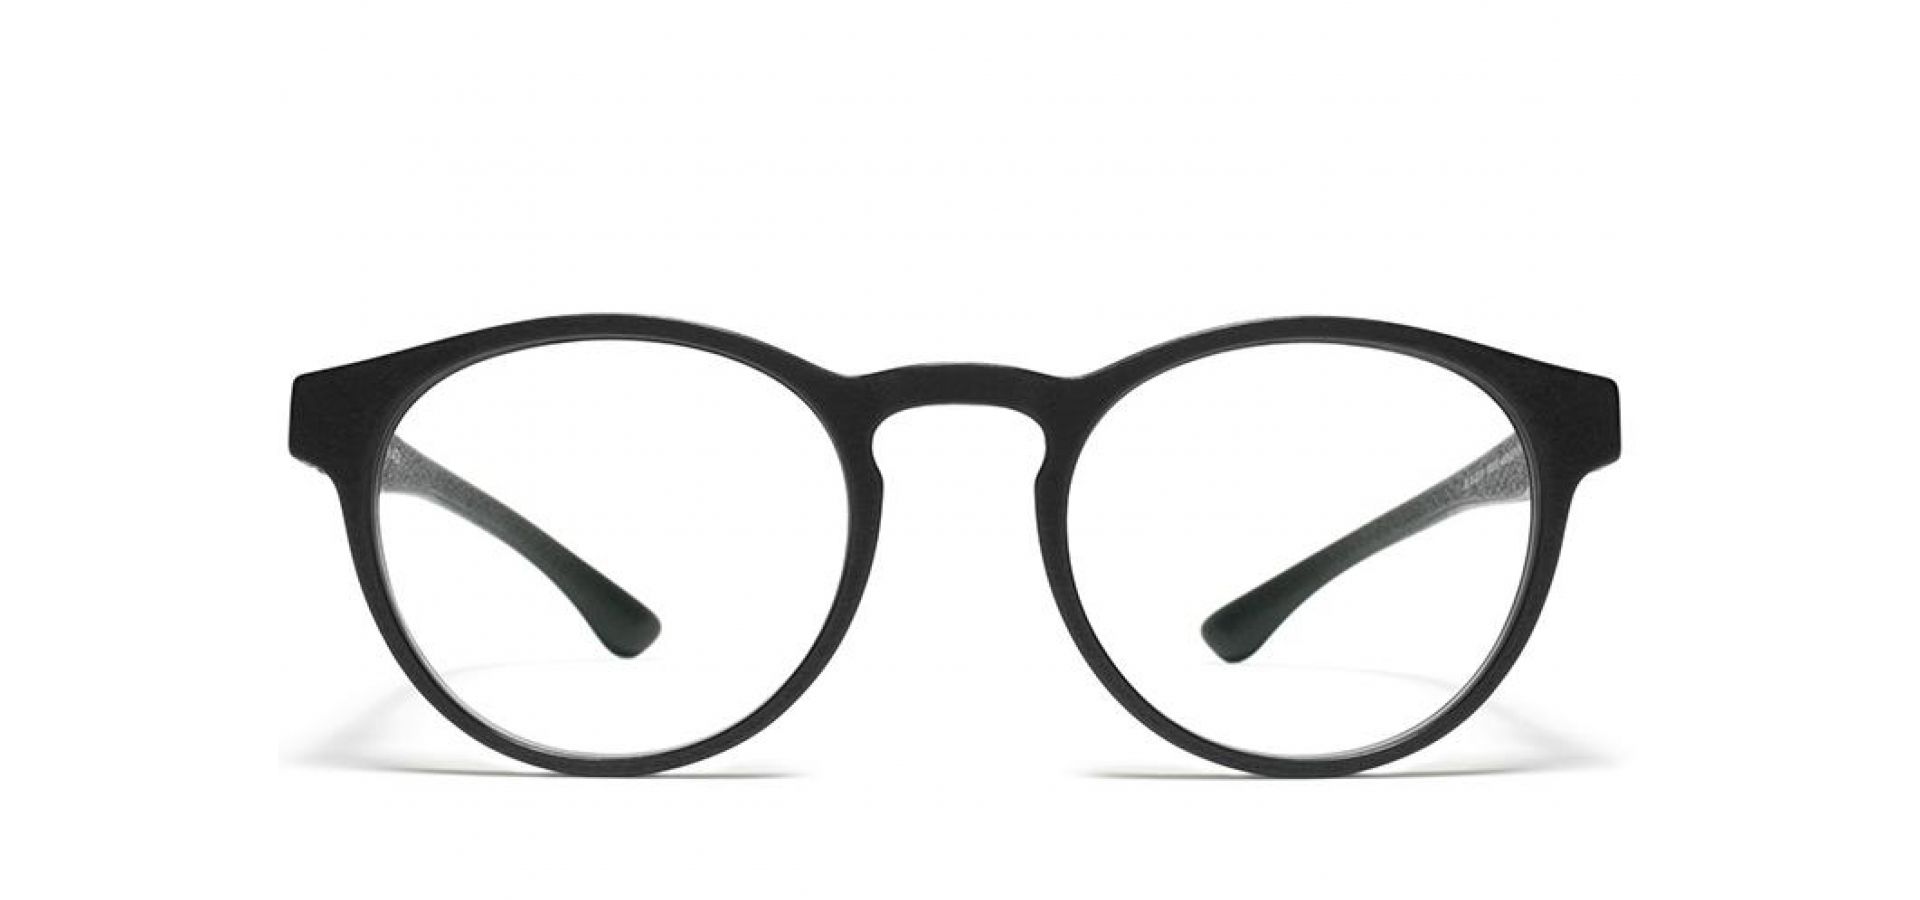 Korekcijska očala Mykita SPECTRE MD1 PITCH BLACK: Velikost: 49/19/140, Spol: unisex, Material: acetat